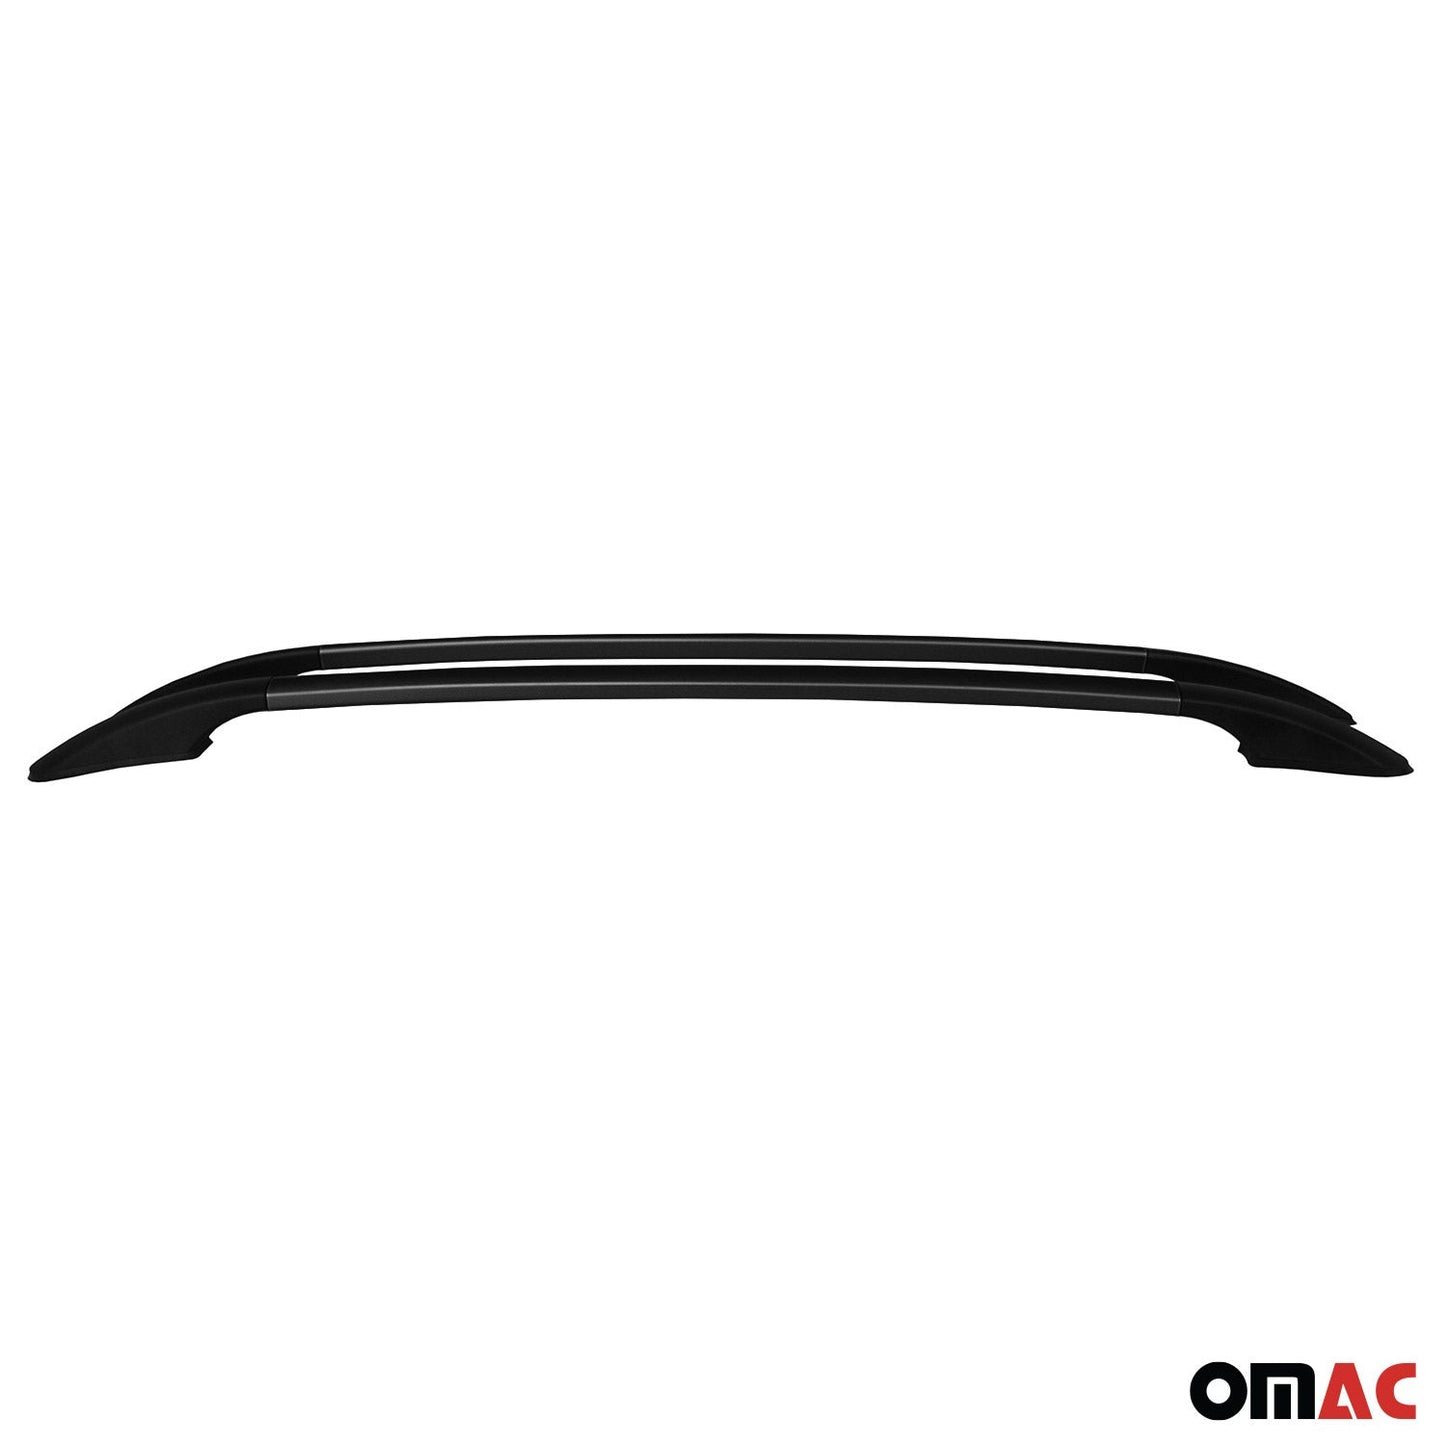 OMAC Roof Rack Side Rails Aluminium for Toyota Corolla iM 2017-2018 Black 2 Pcs 7017934FB